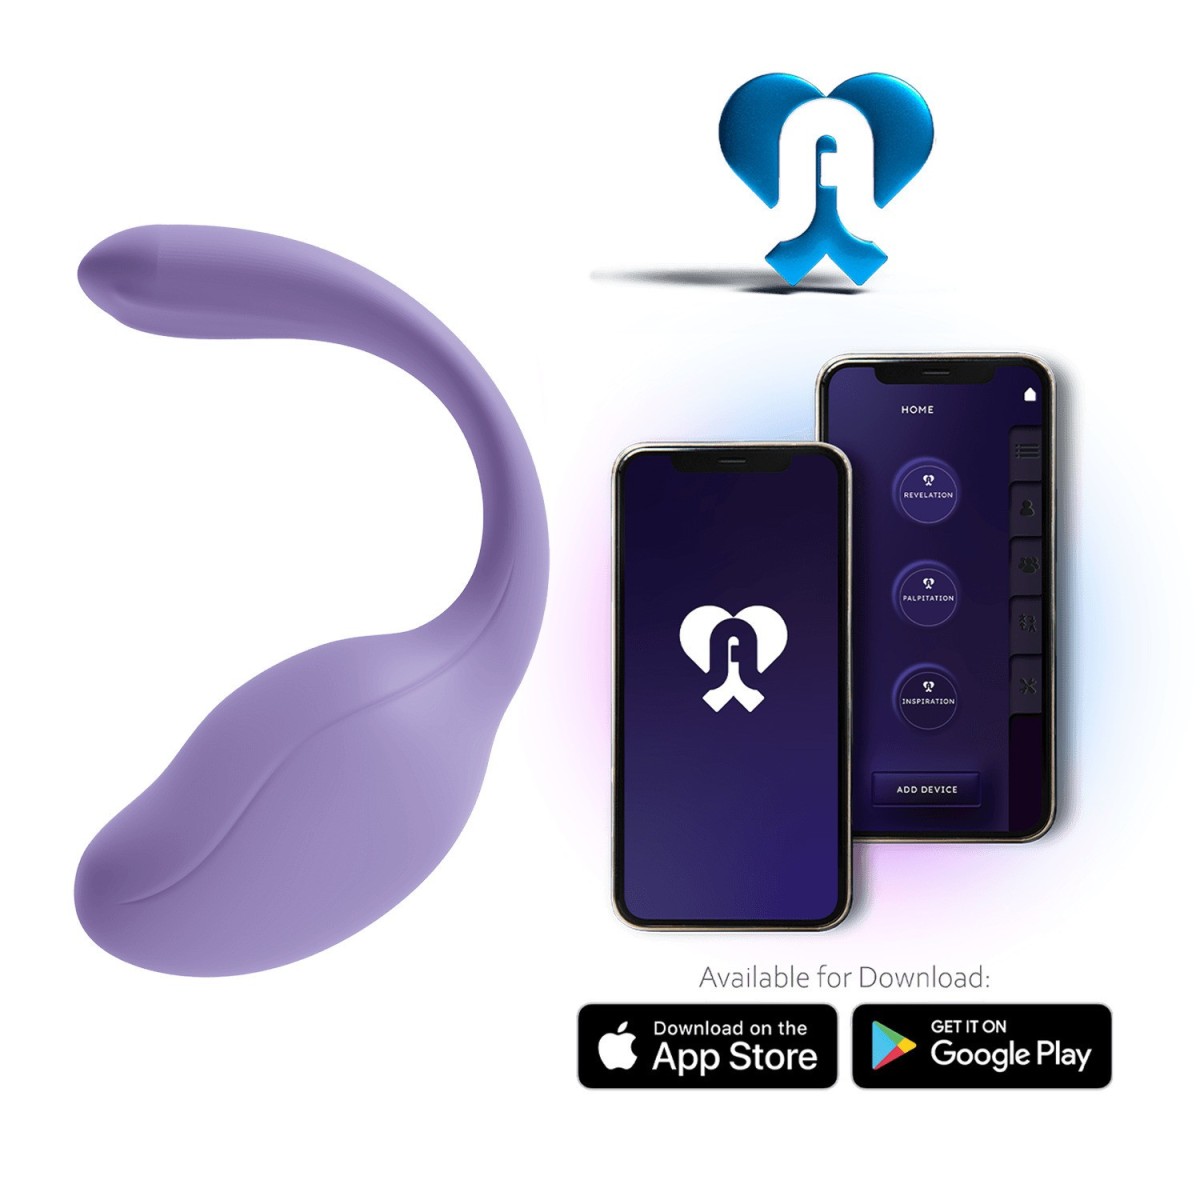 Ovetto vibrante stimolatore punto G e clitoride Smart Dream 3.0 + APP